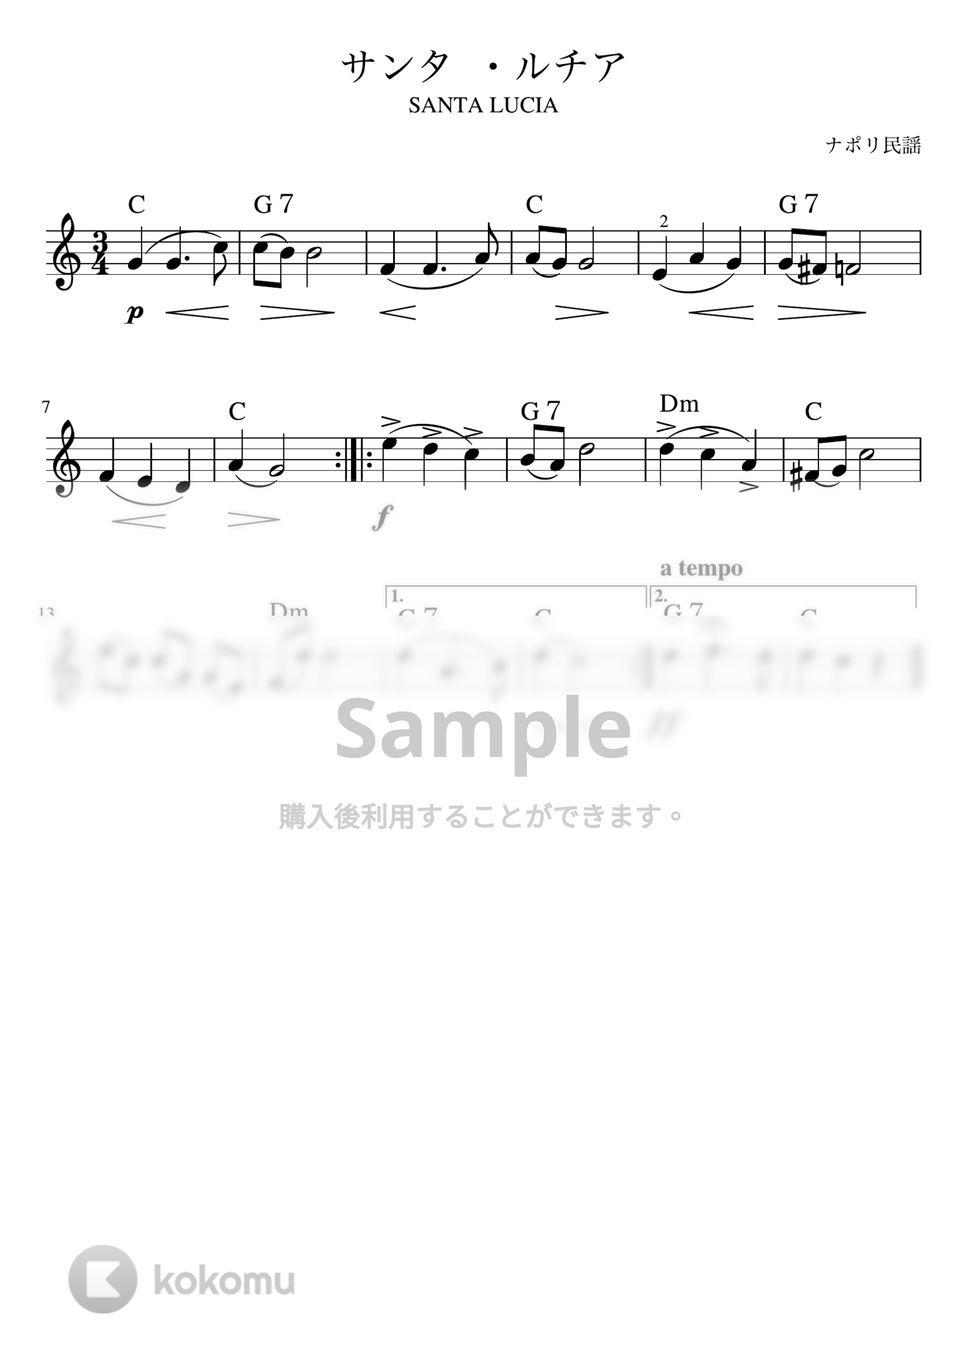 サンタルチア (メロディーコード) by pfkaori